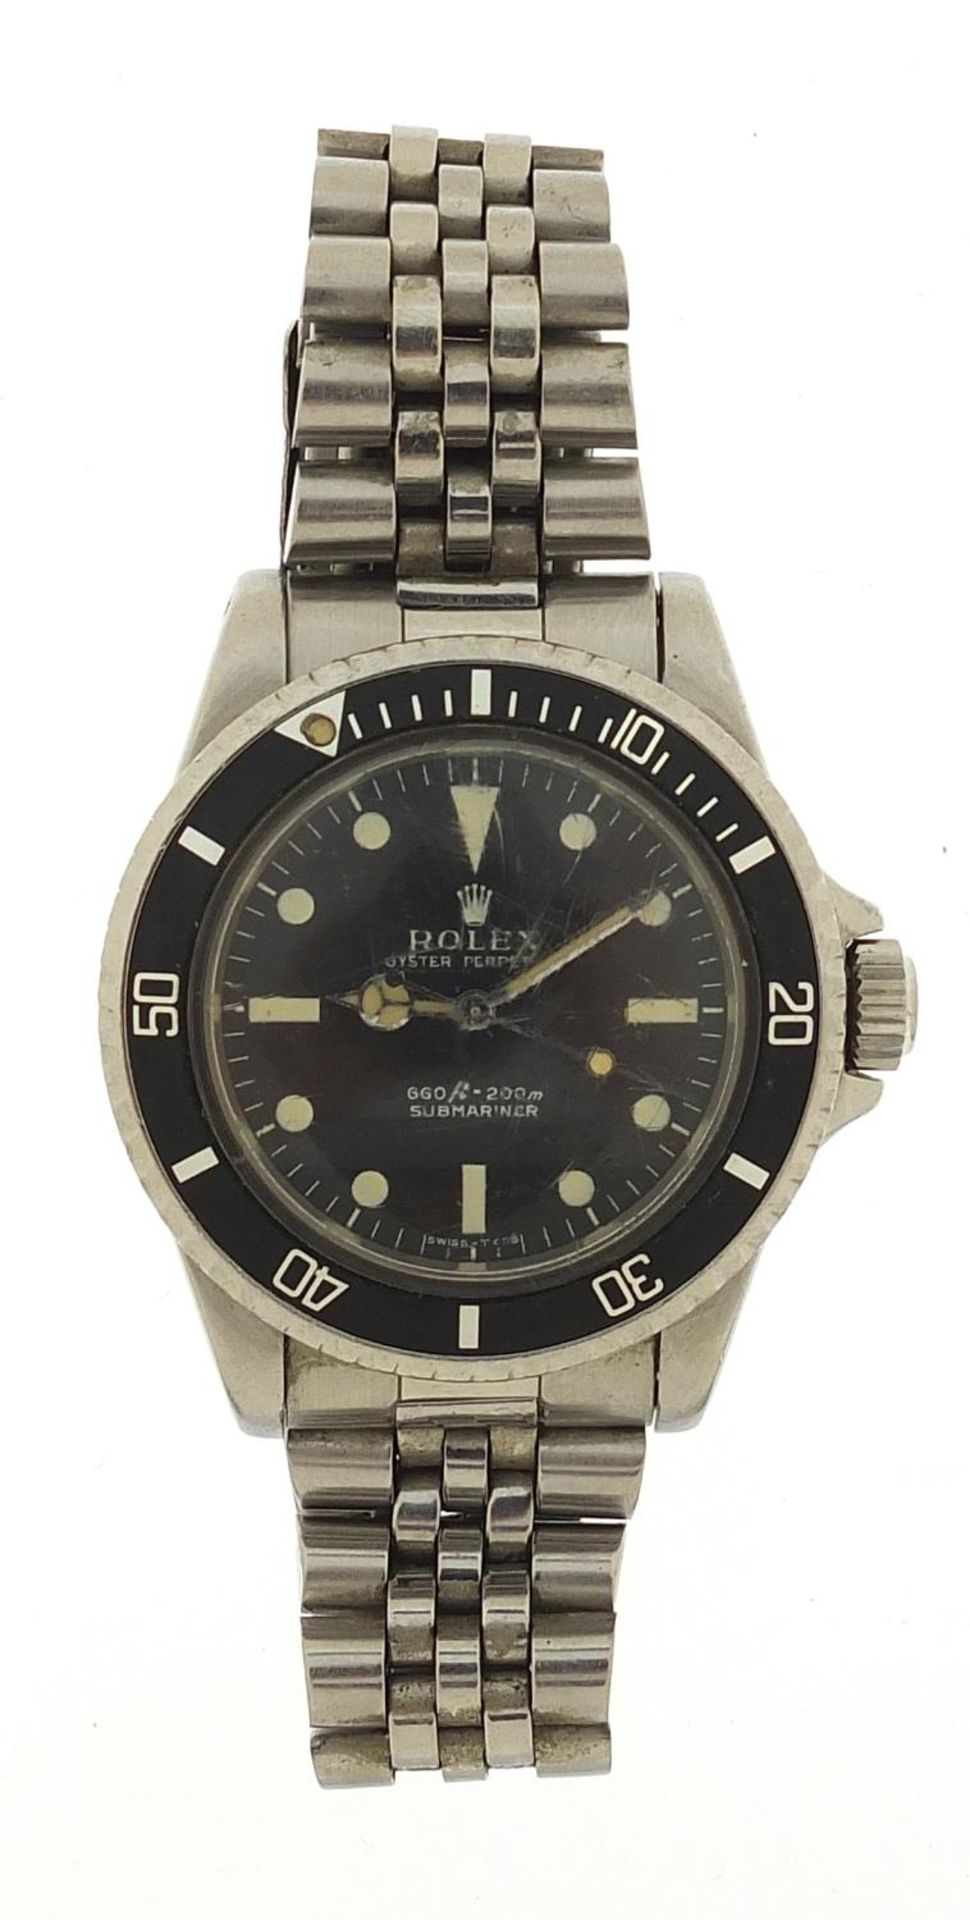 Rolex gentlemen's Submariner automatic wristwatch, ref 5513, serial number 1005684, 40mm in diameter - Bild 2 aus 9